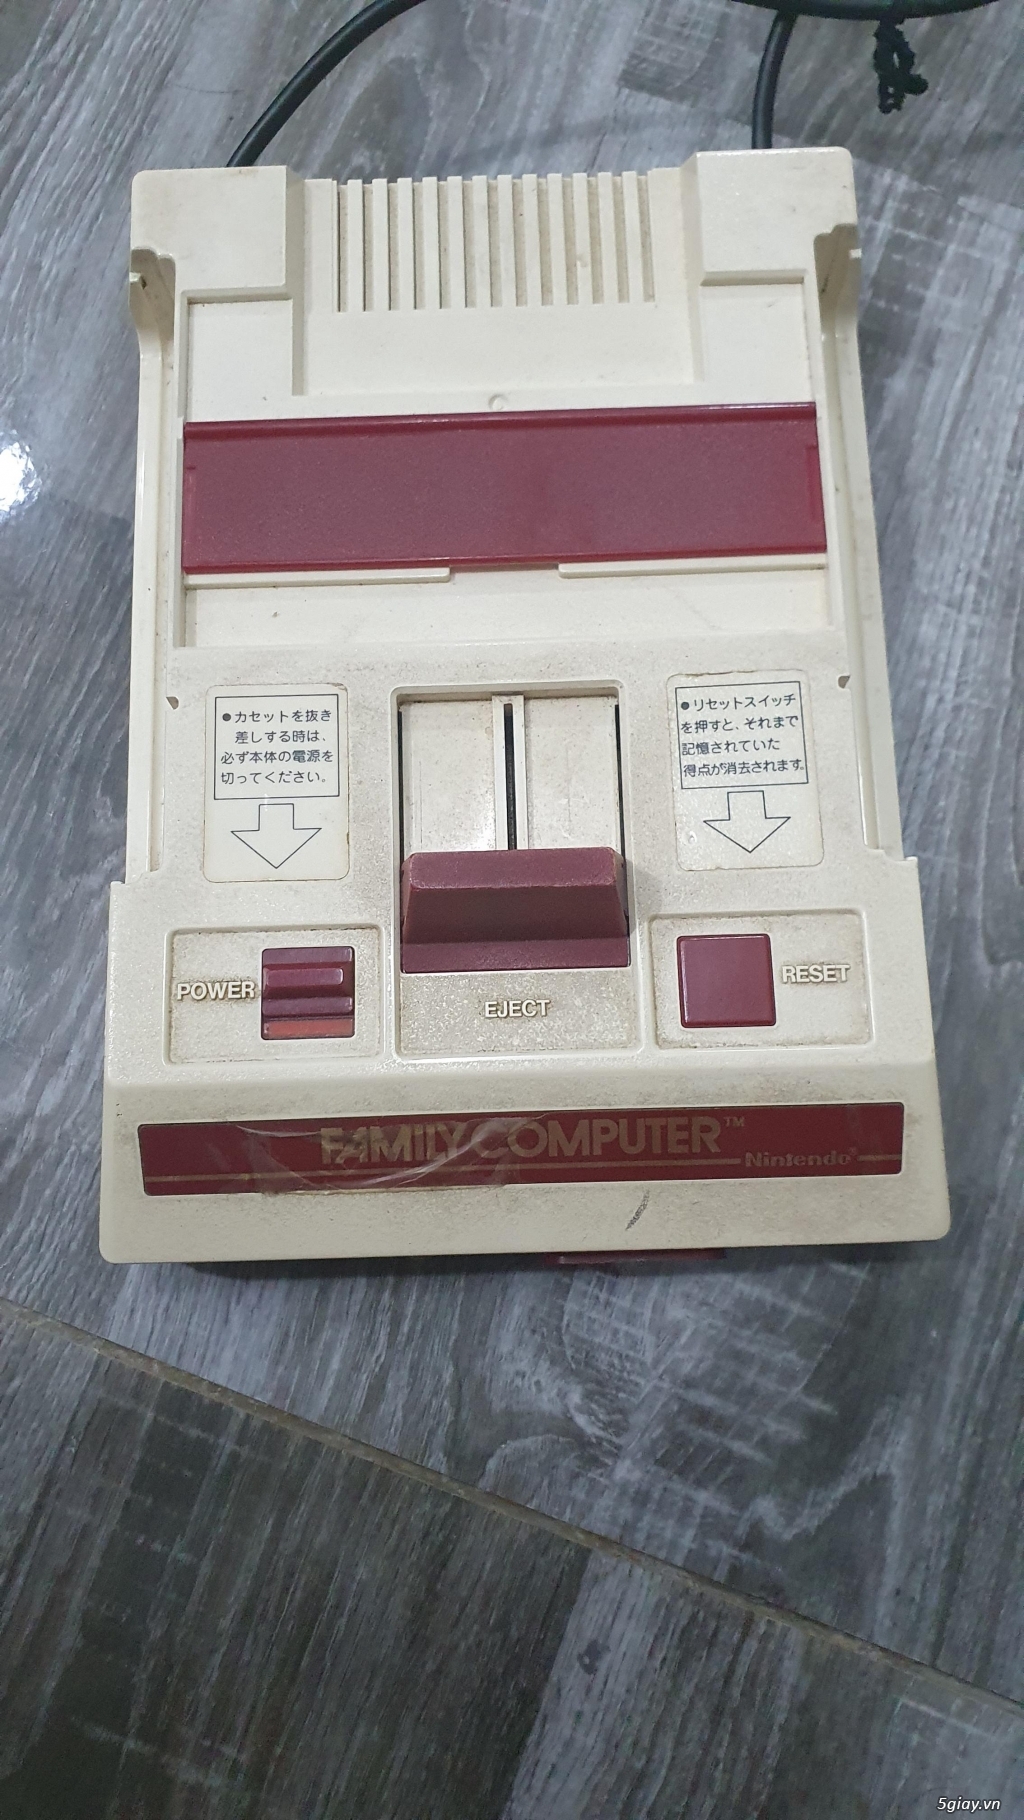 Máy Famicom cổ zin còn box và hóa đơn mua hàng 1983 - 4